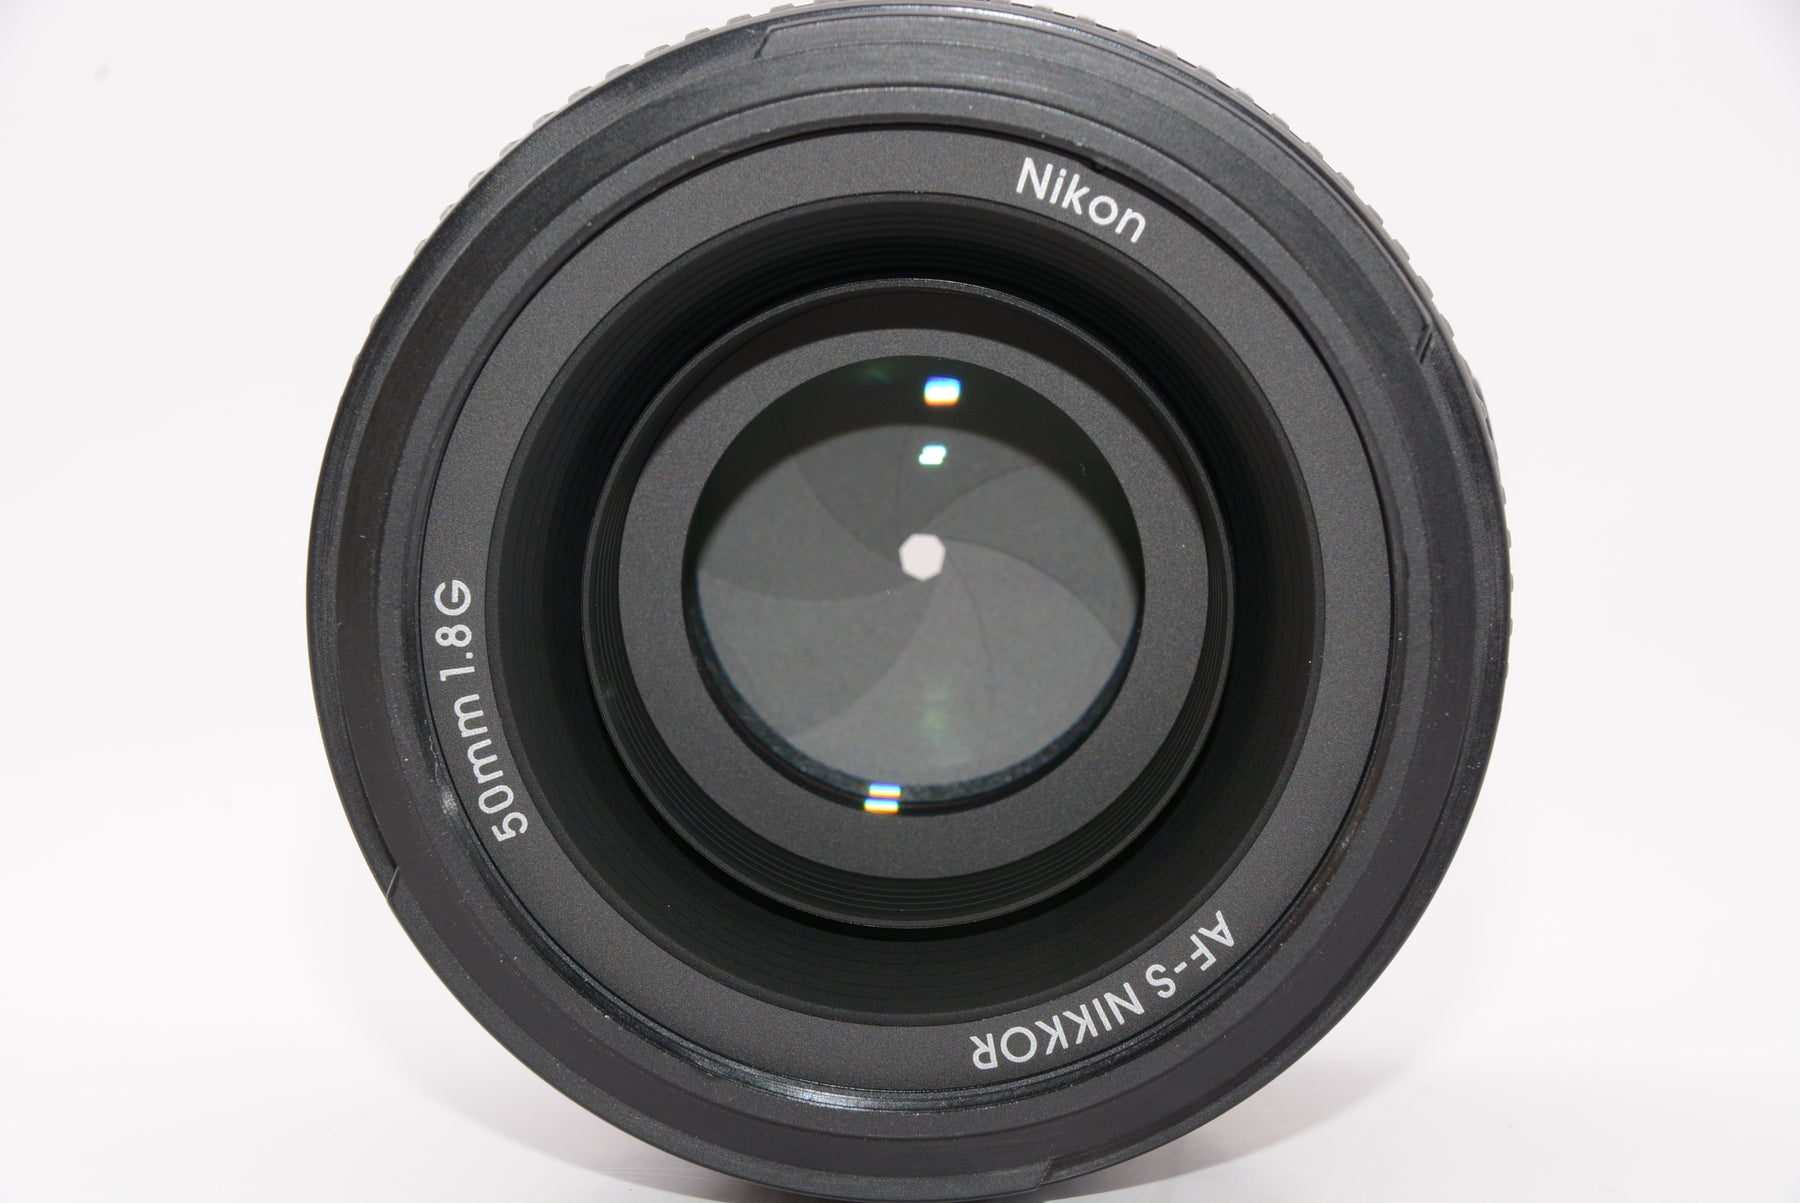 【外観特上級】Nikon 単焦点レンズ AF-S NIKKOR 50mm f/1.8G フルサイズ対応 AF-S 50/1.8G